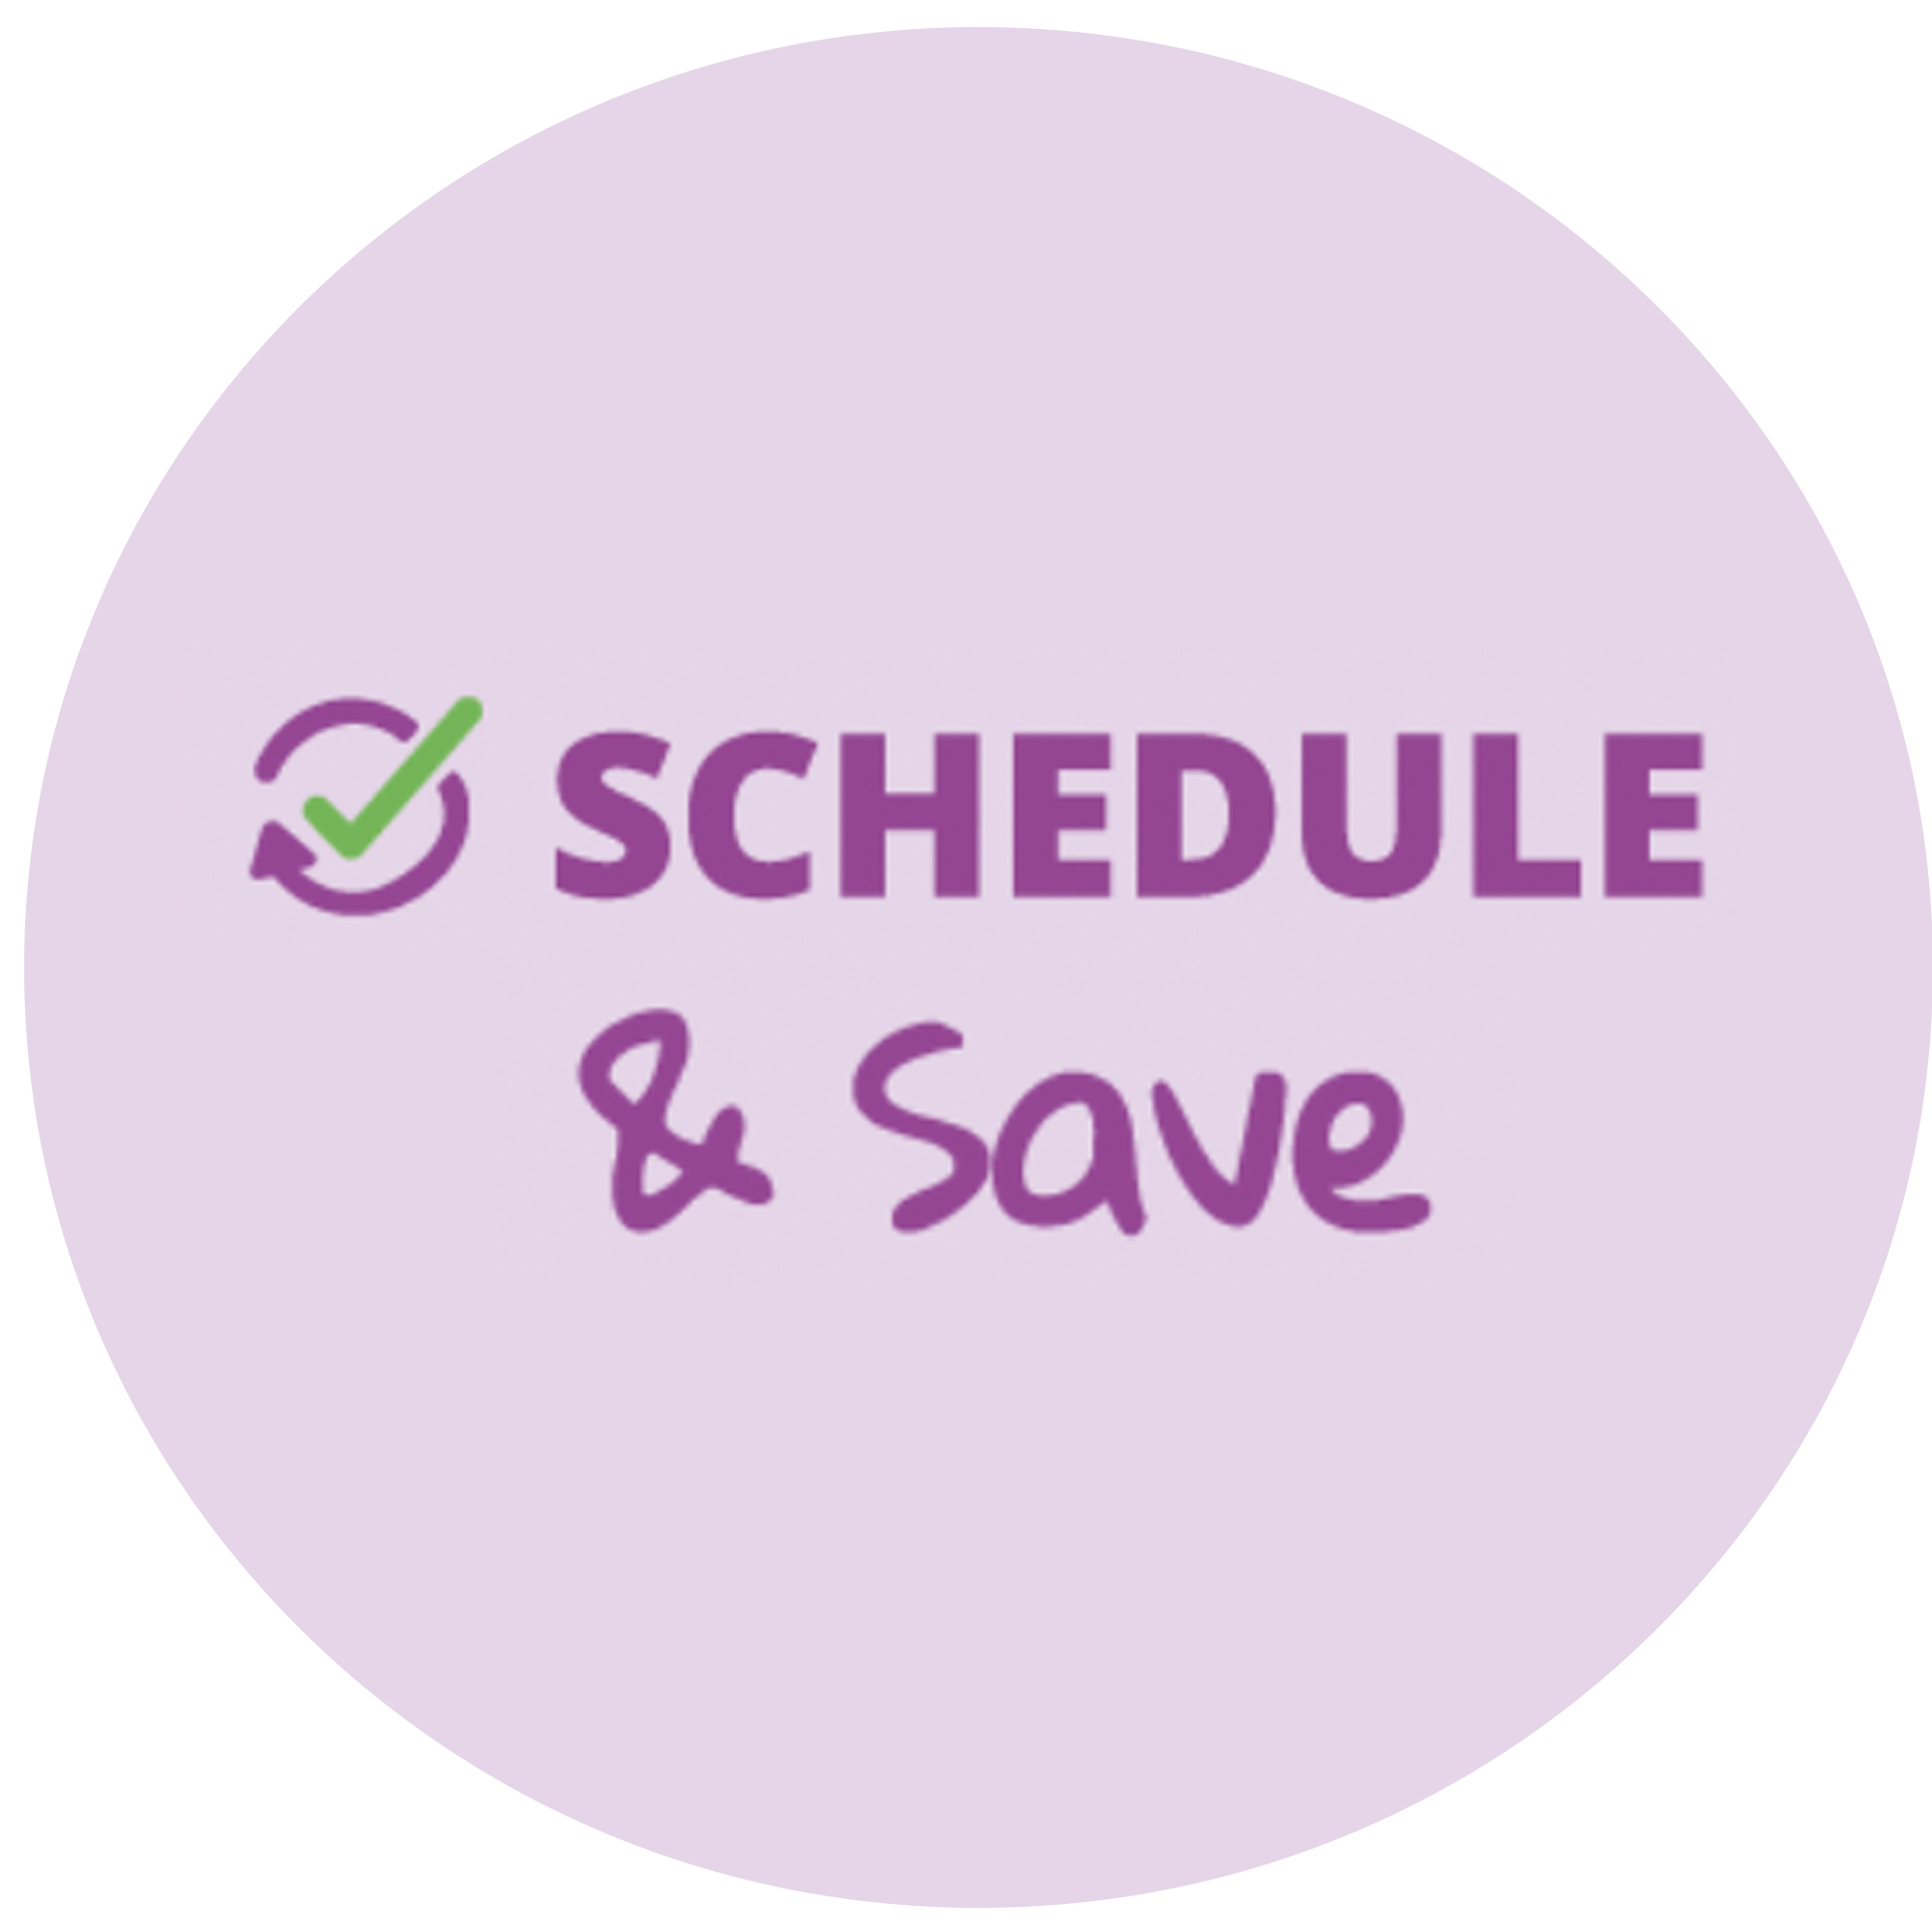 Schedule & Save